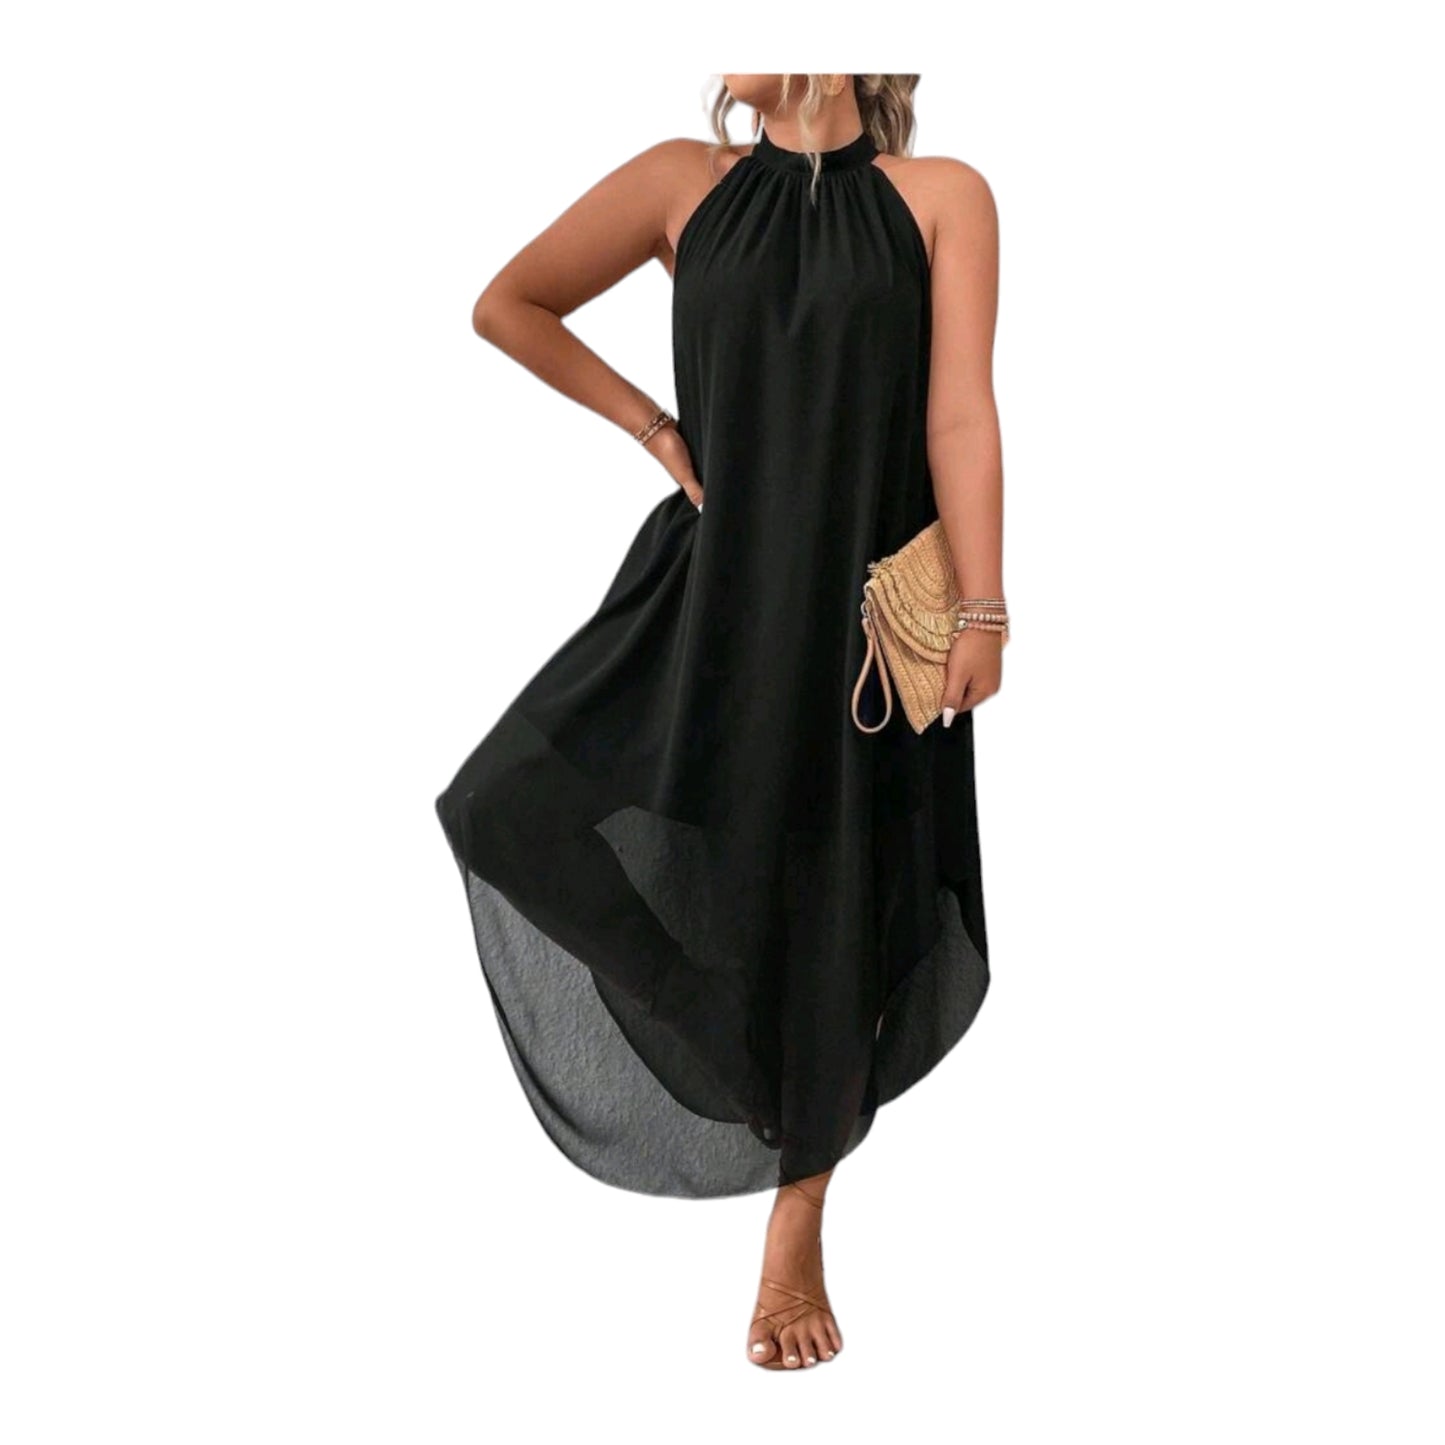 Plus-size-Kleid Neckholder 44-52